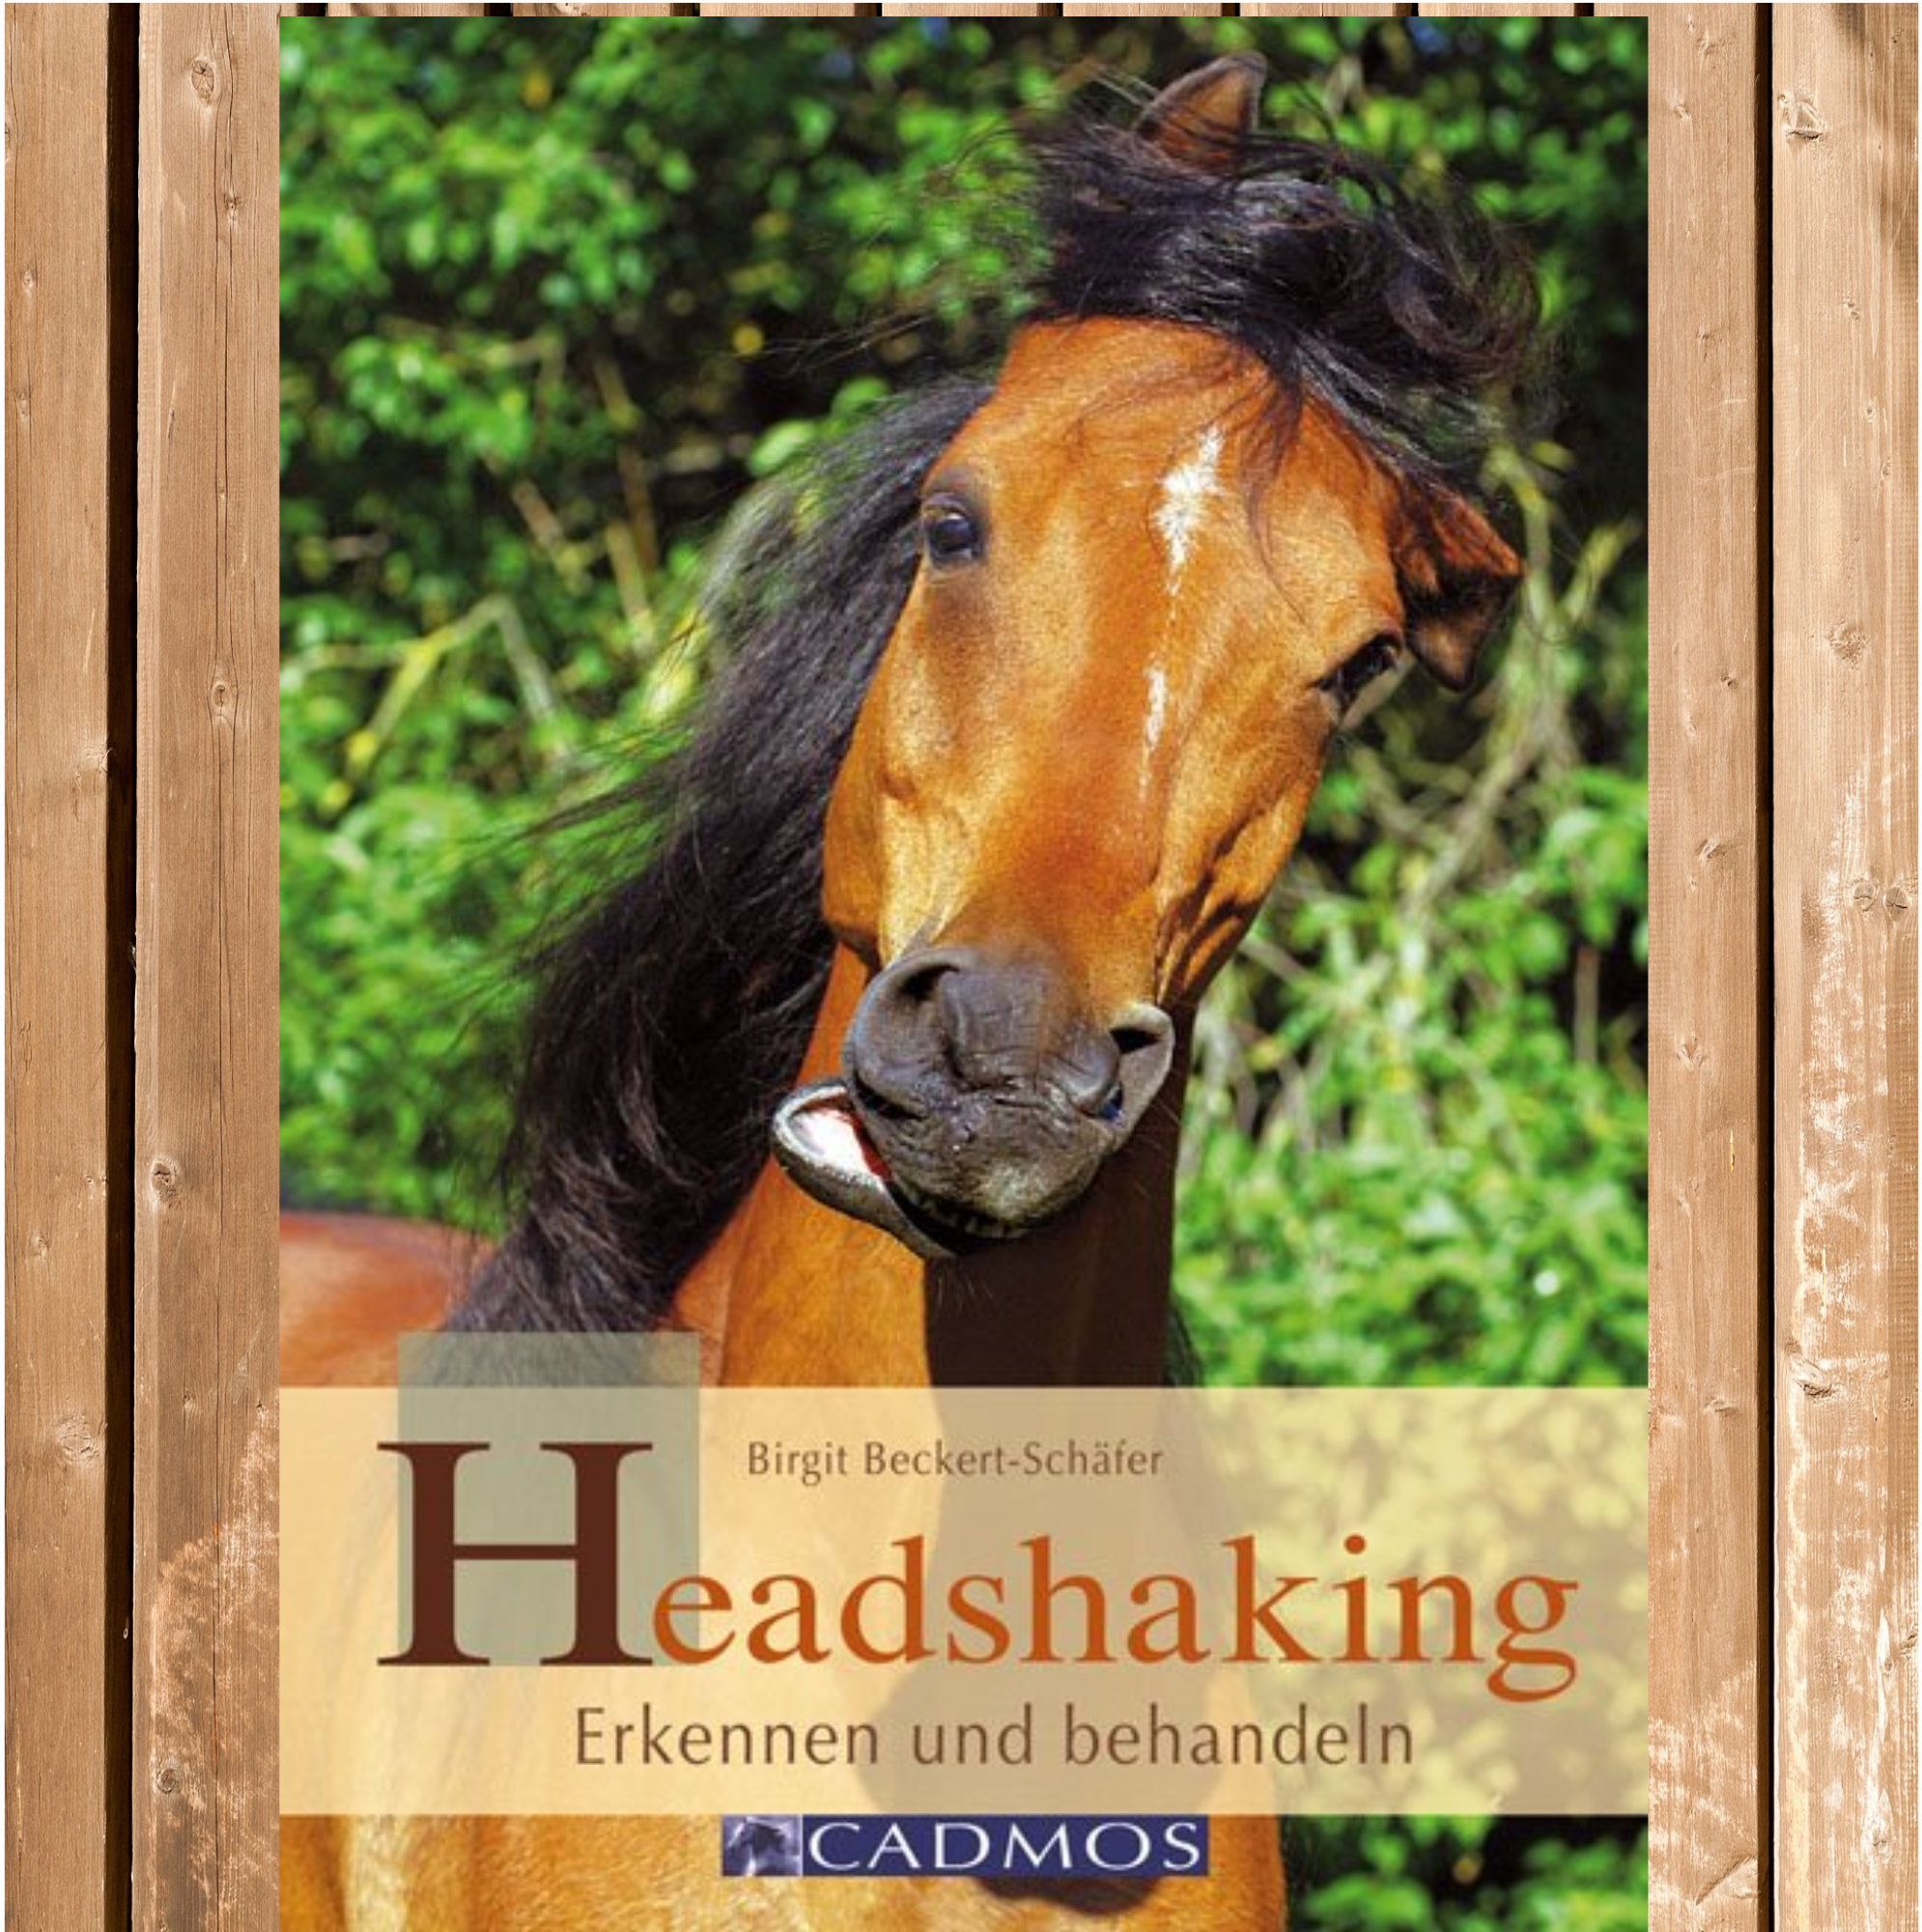 Headshaking - Erkennen und behandeln, Das Headshaking-Syndrom